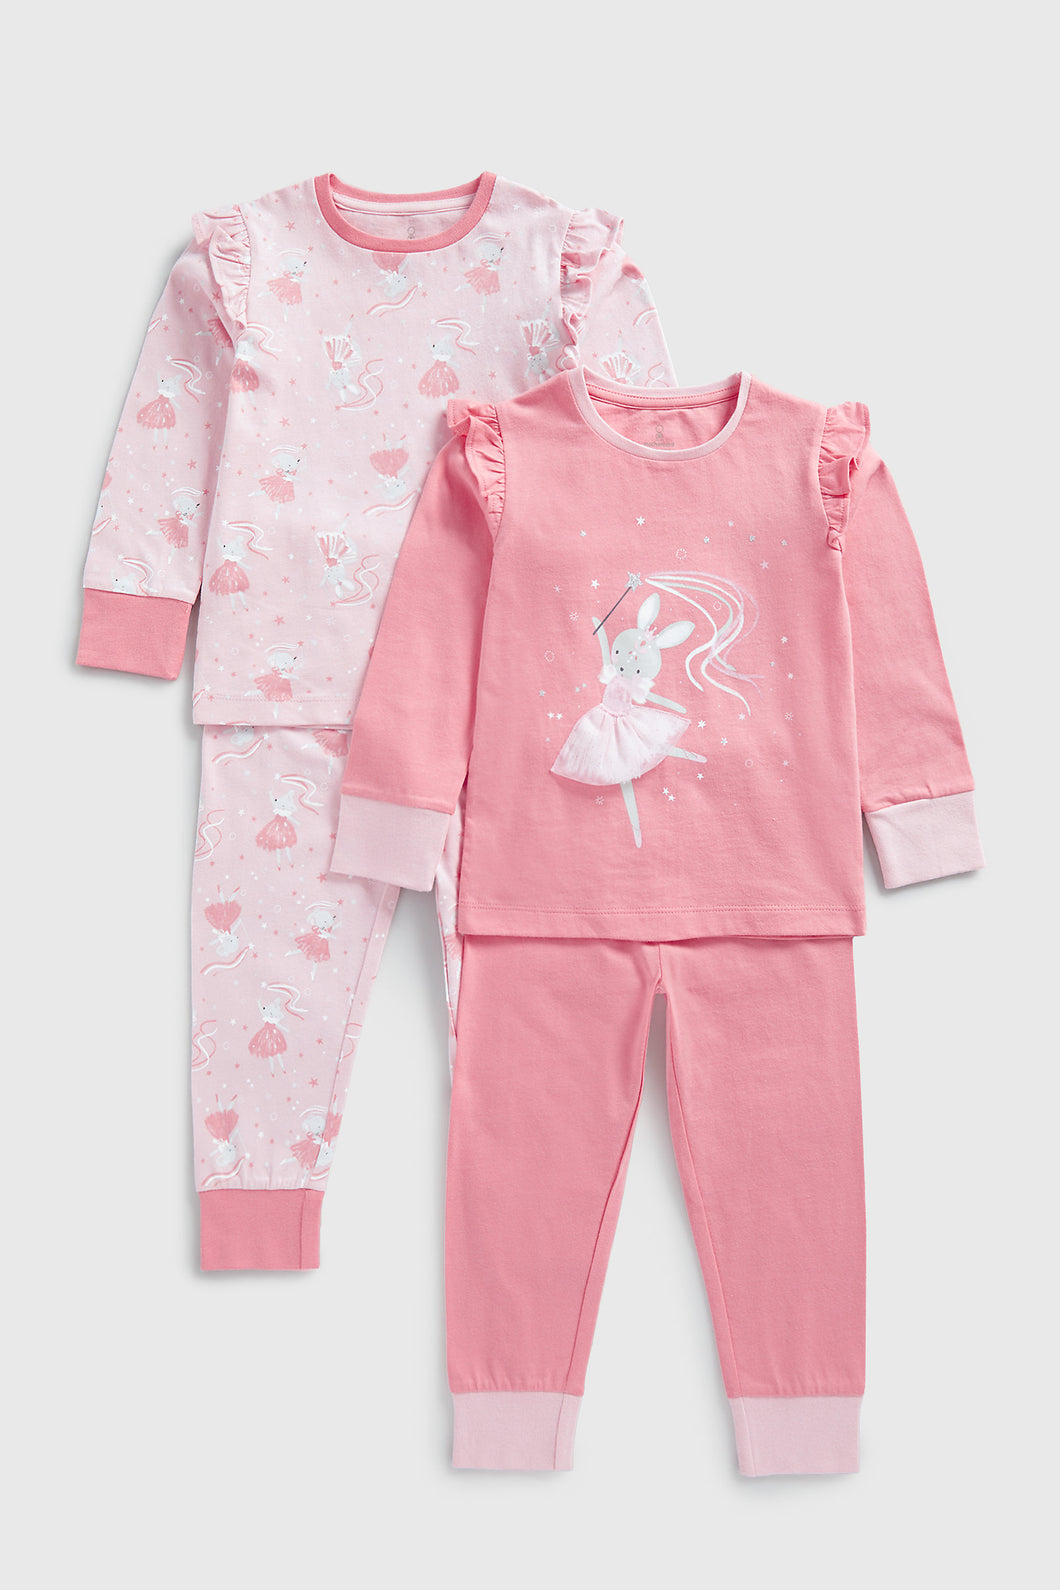 Mothercare Ballerina Pyjamas - 2 Pack